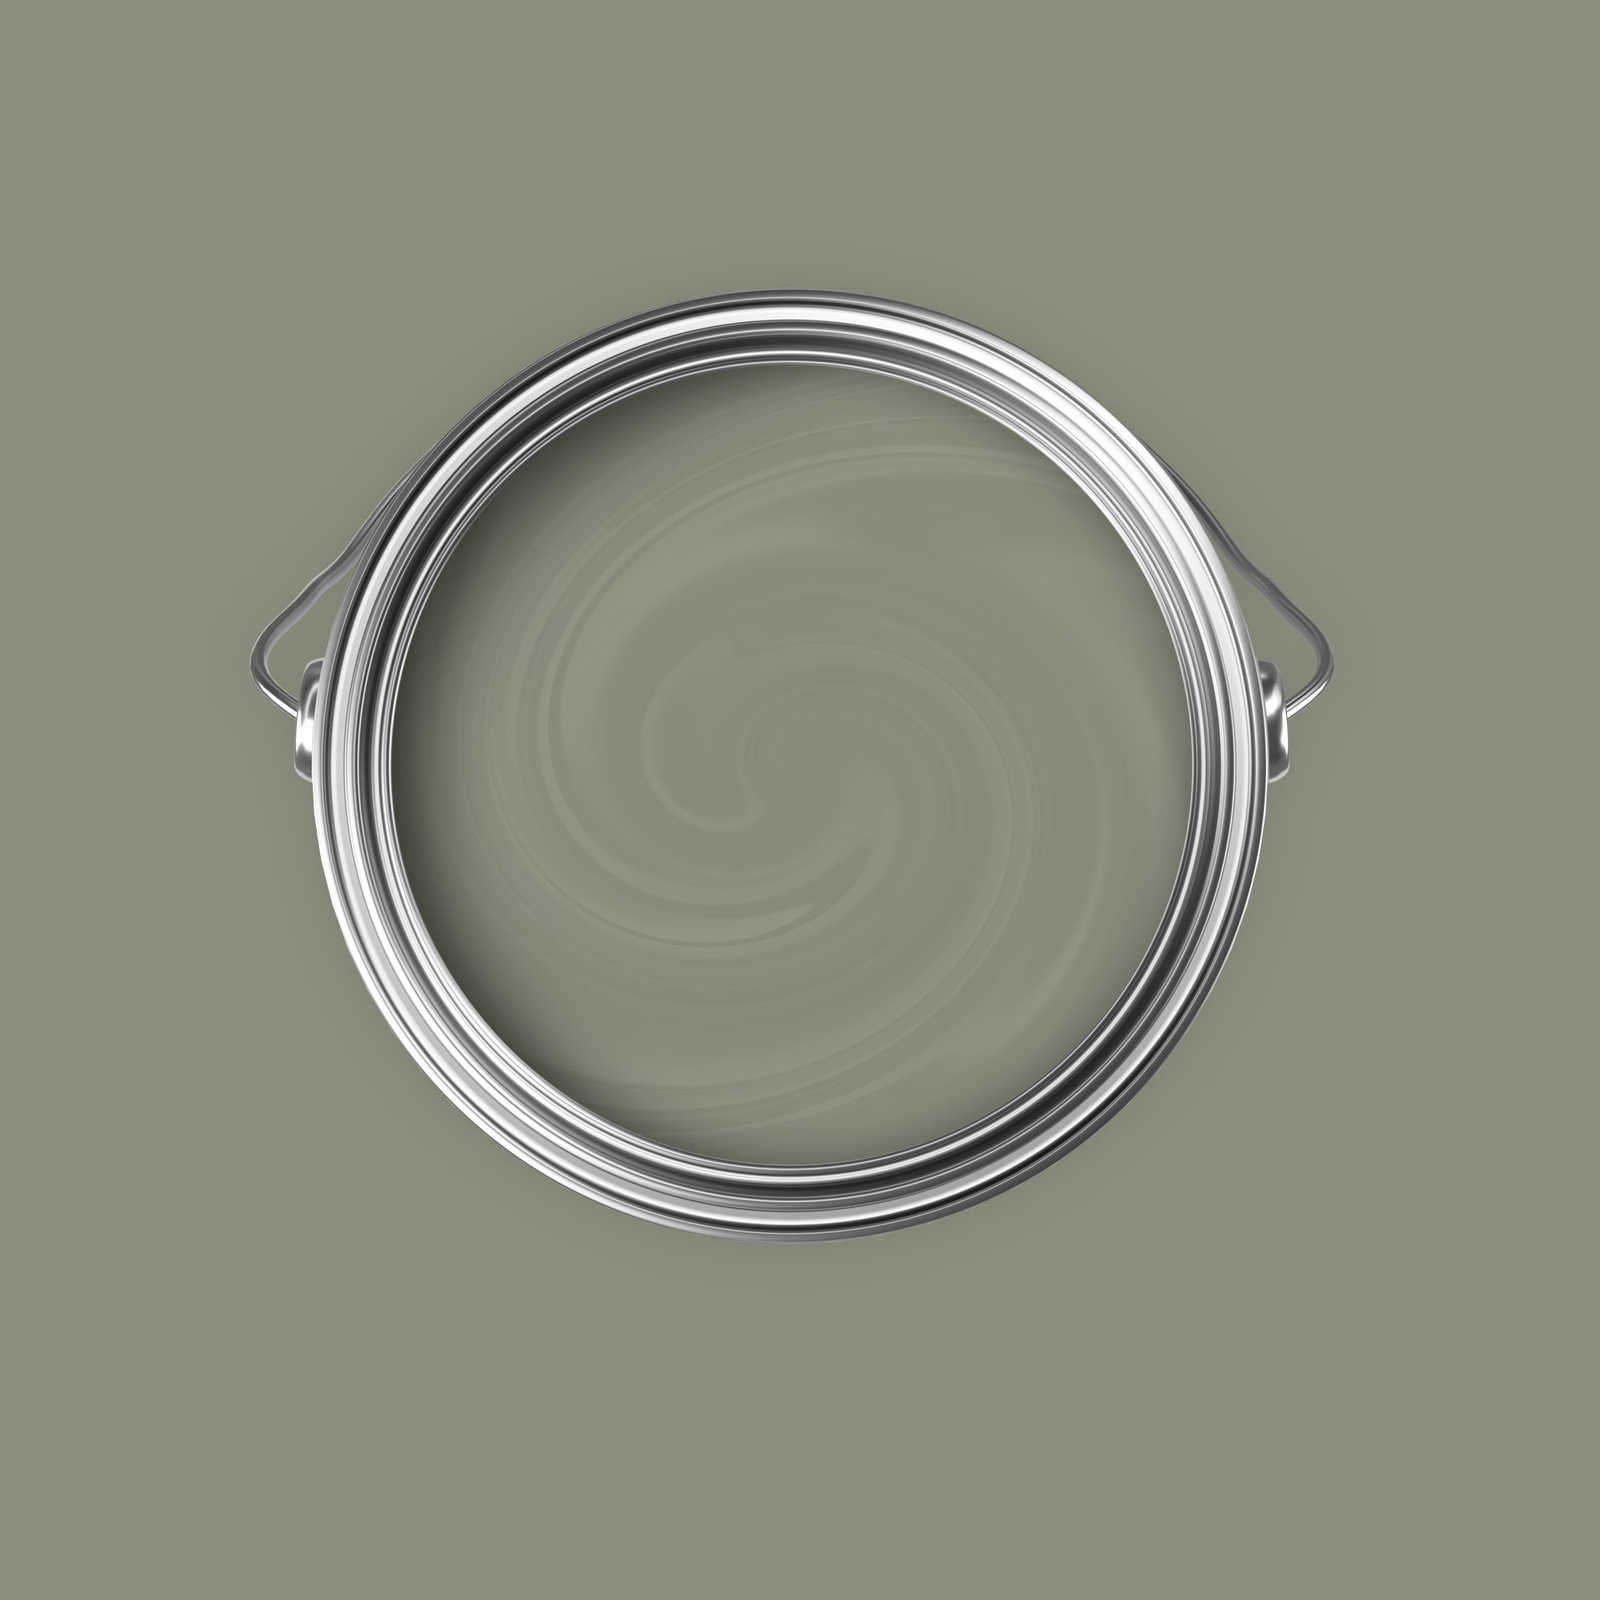             Peinture murale Premium vert olive convaincant »Talented calm taupe« NW706 – 5 litres
        